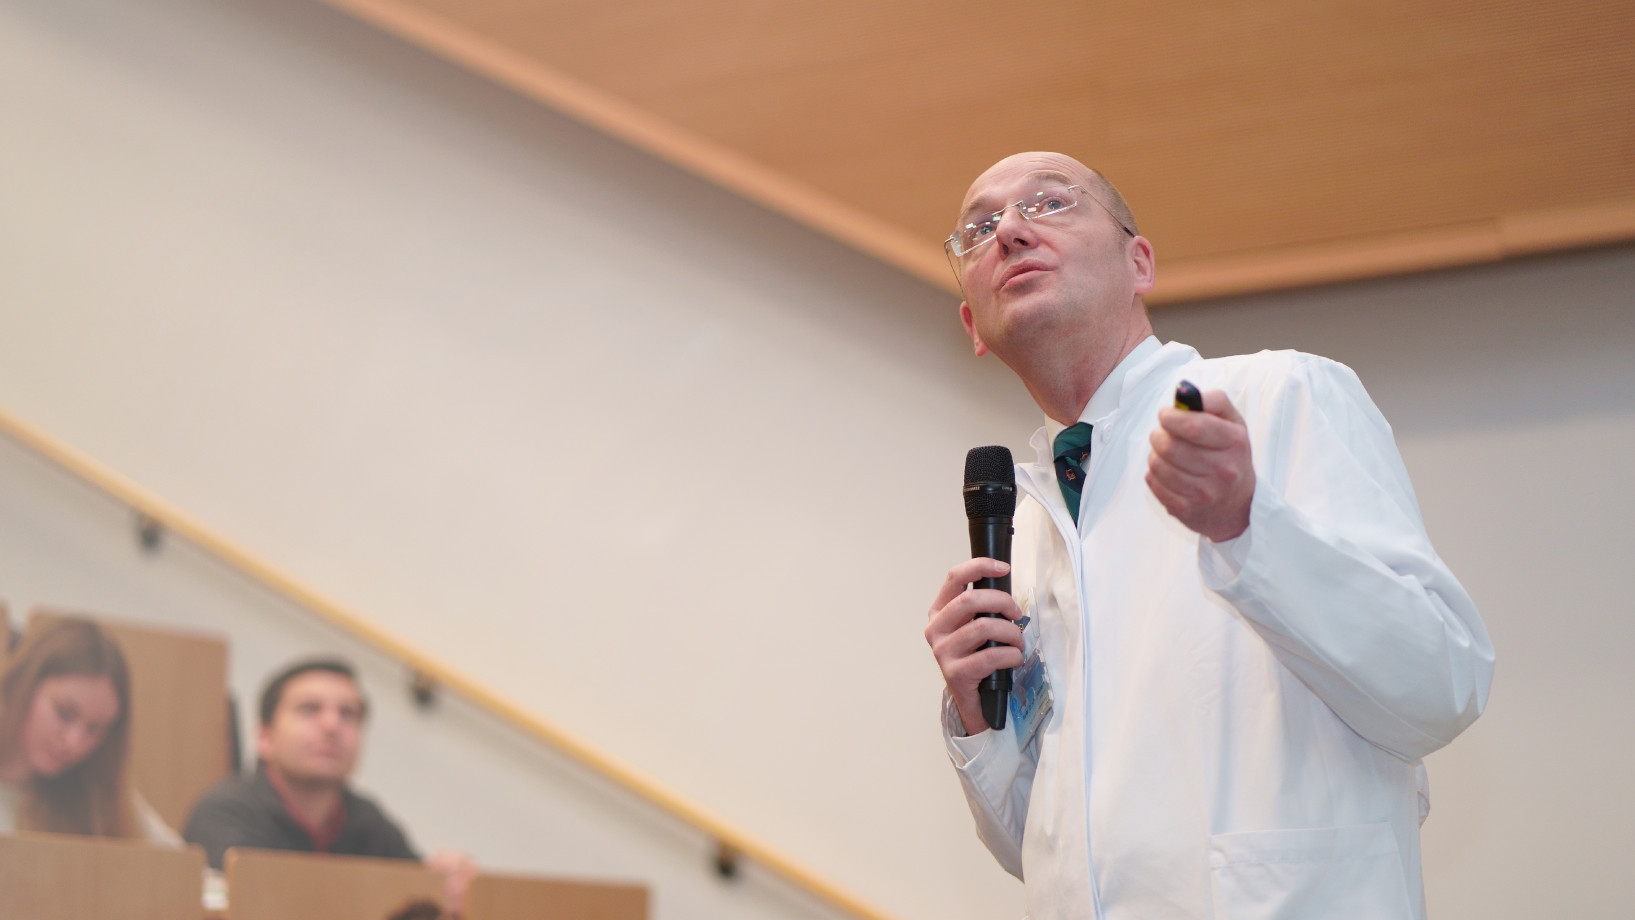 Prof. Dr. Wulf von der Klinik für Hämatologie und Medizinischen Onkologie hält eine Vorlesung